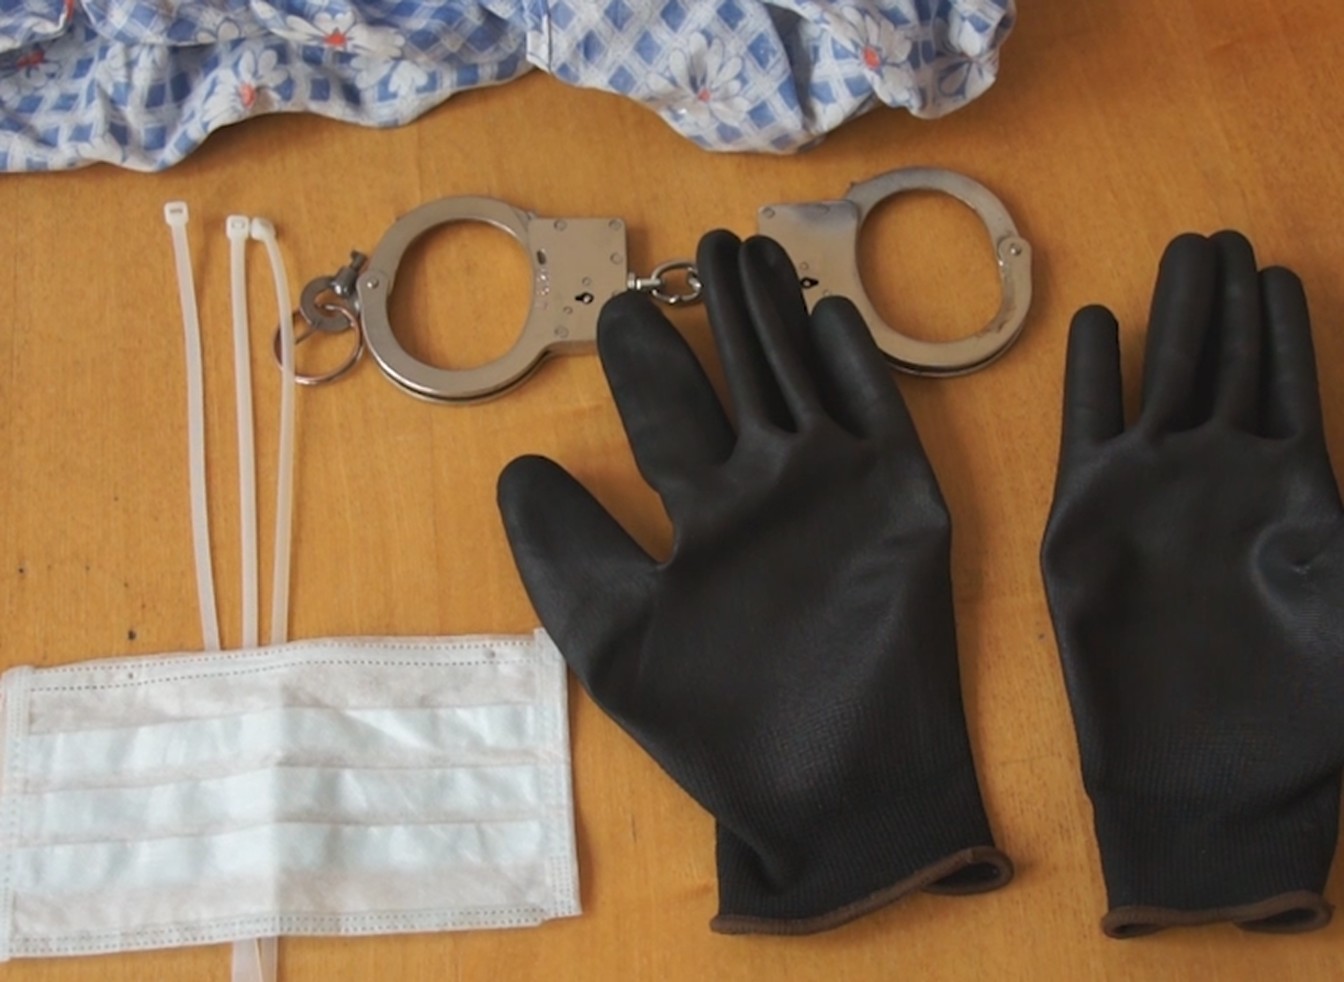 Glove torture